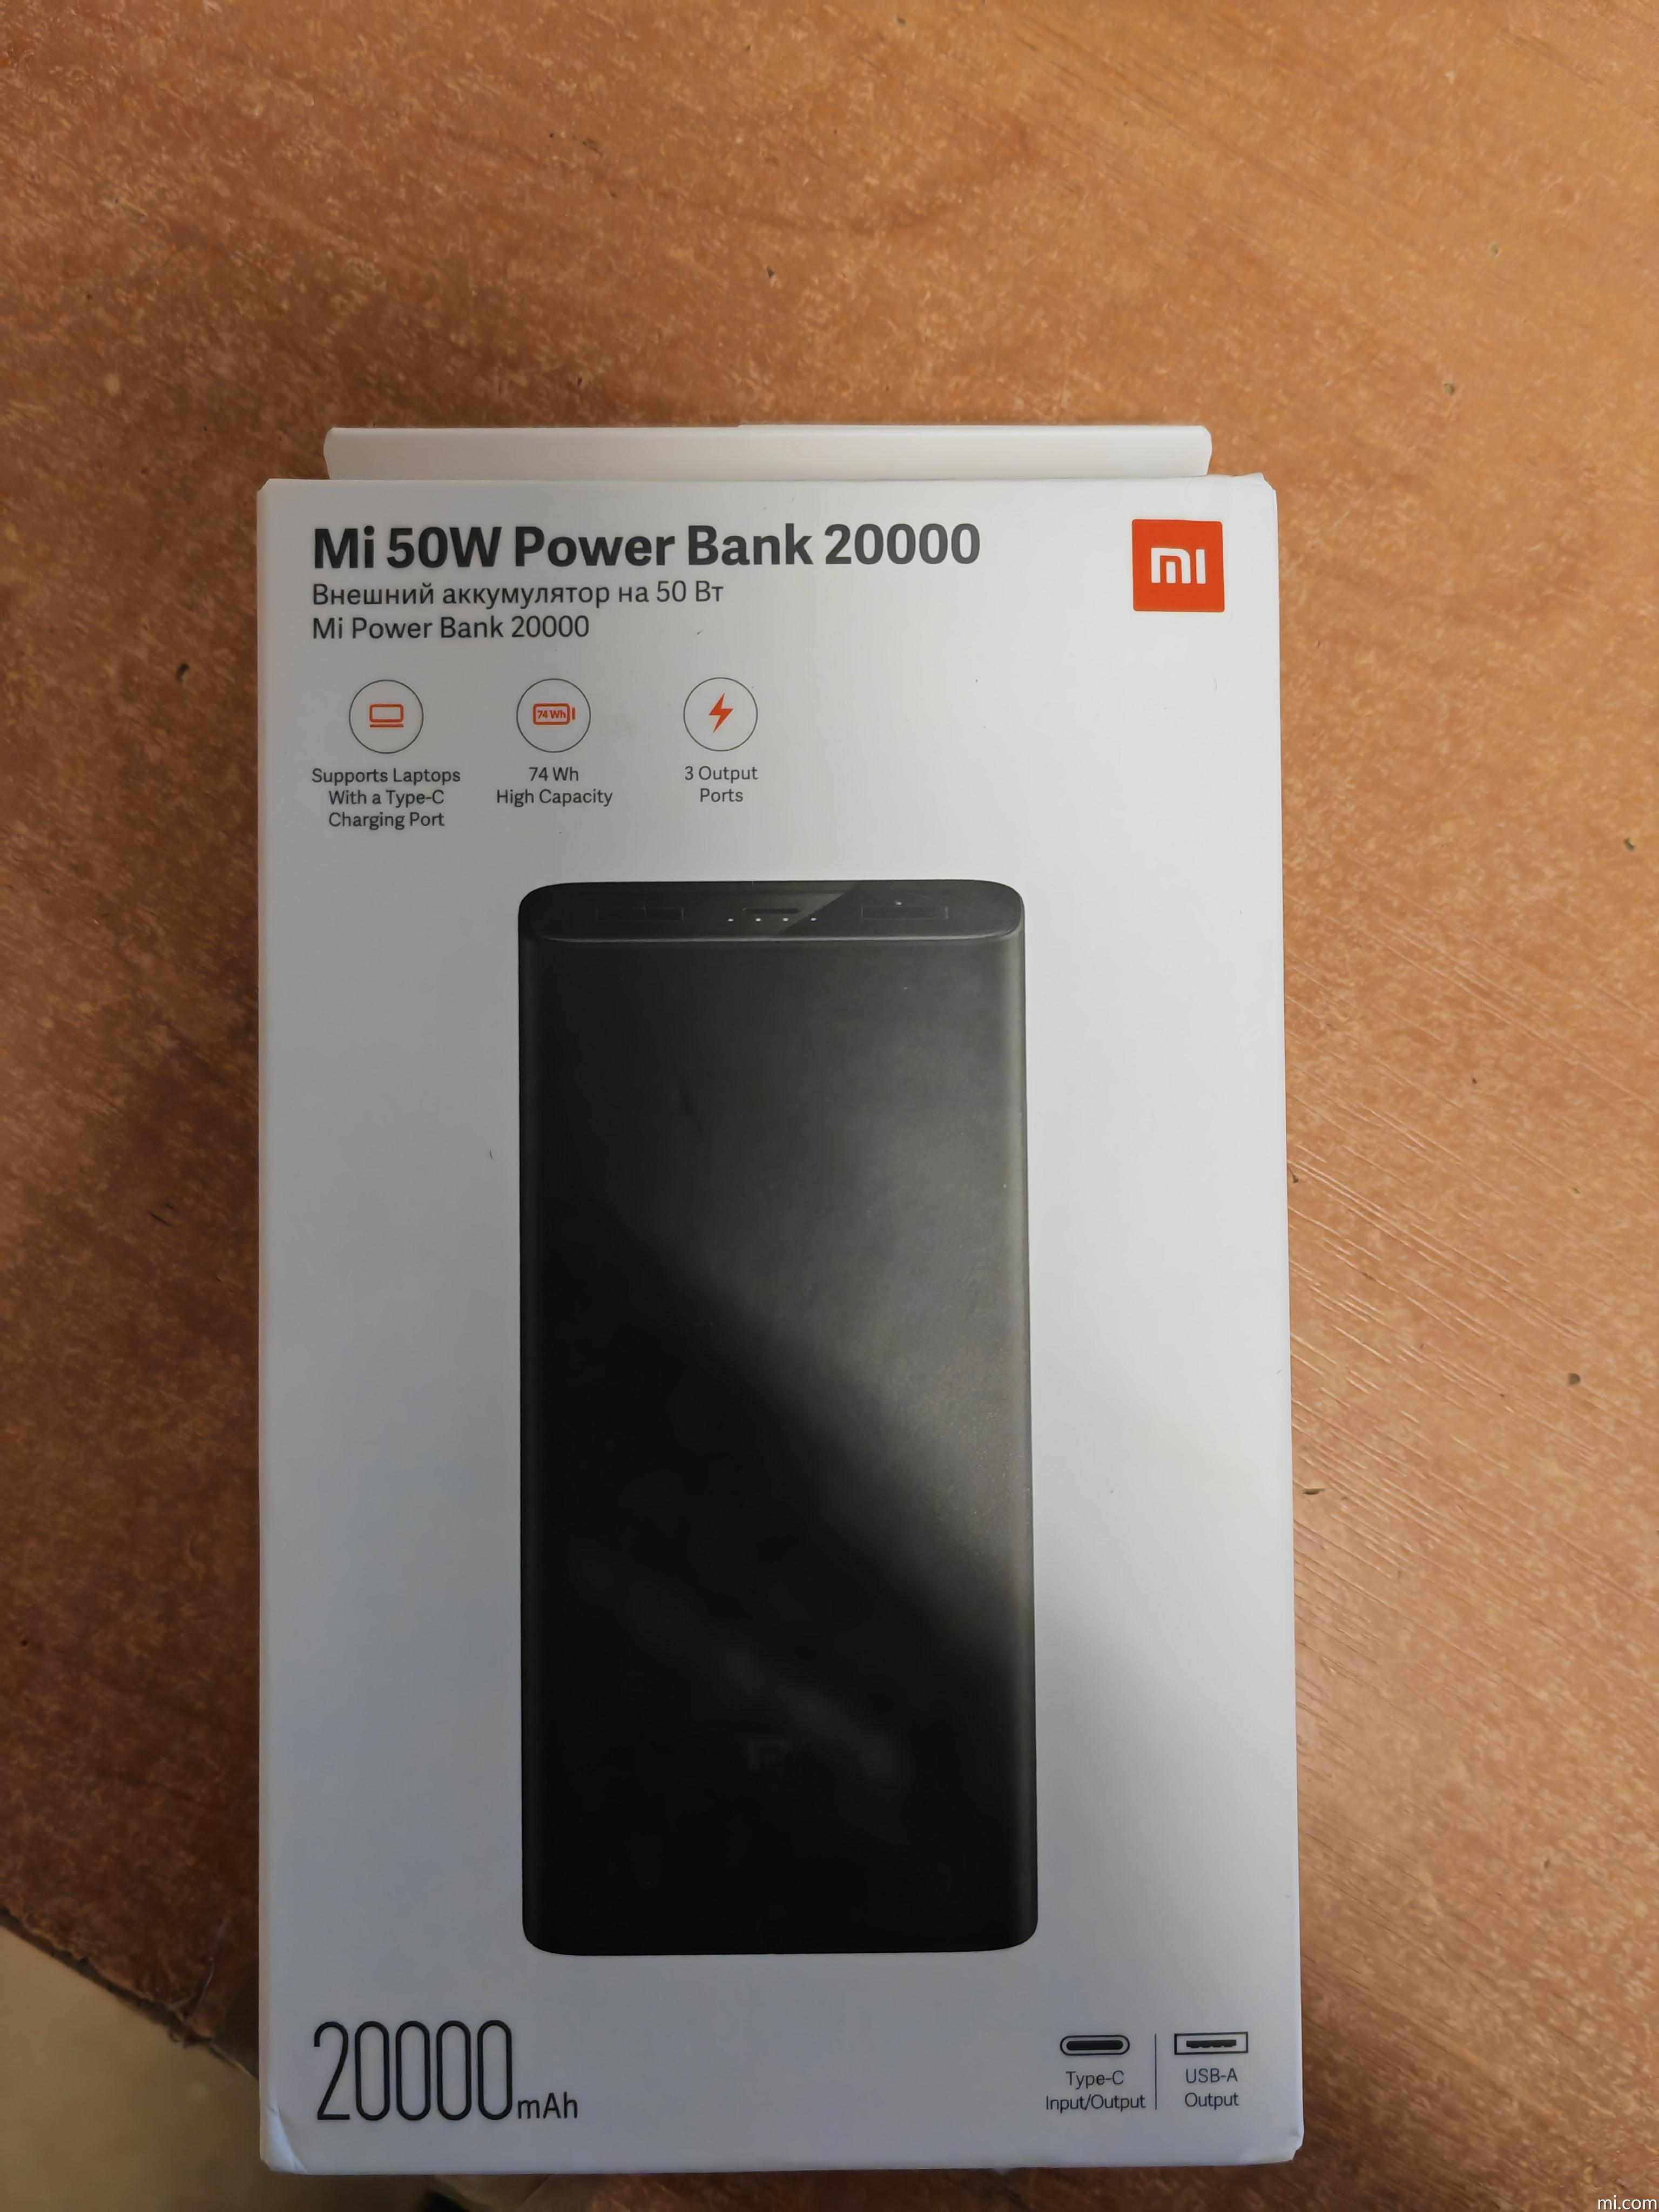 Mi 50W Power Bank 20000 - Xiaomi UK